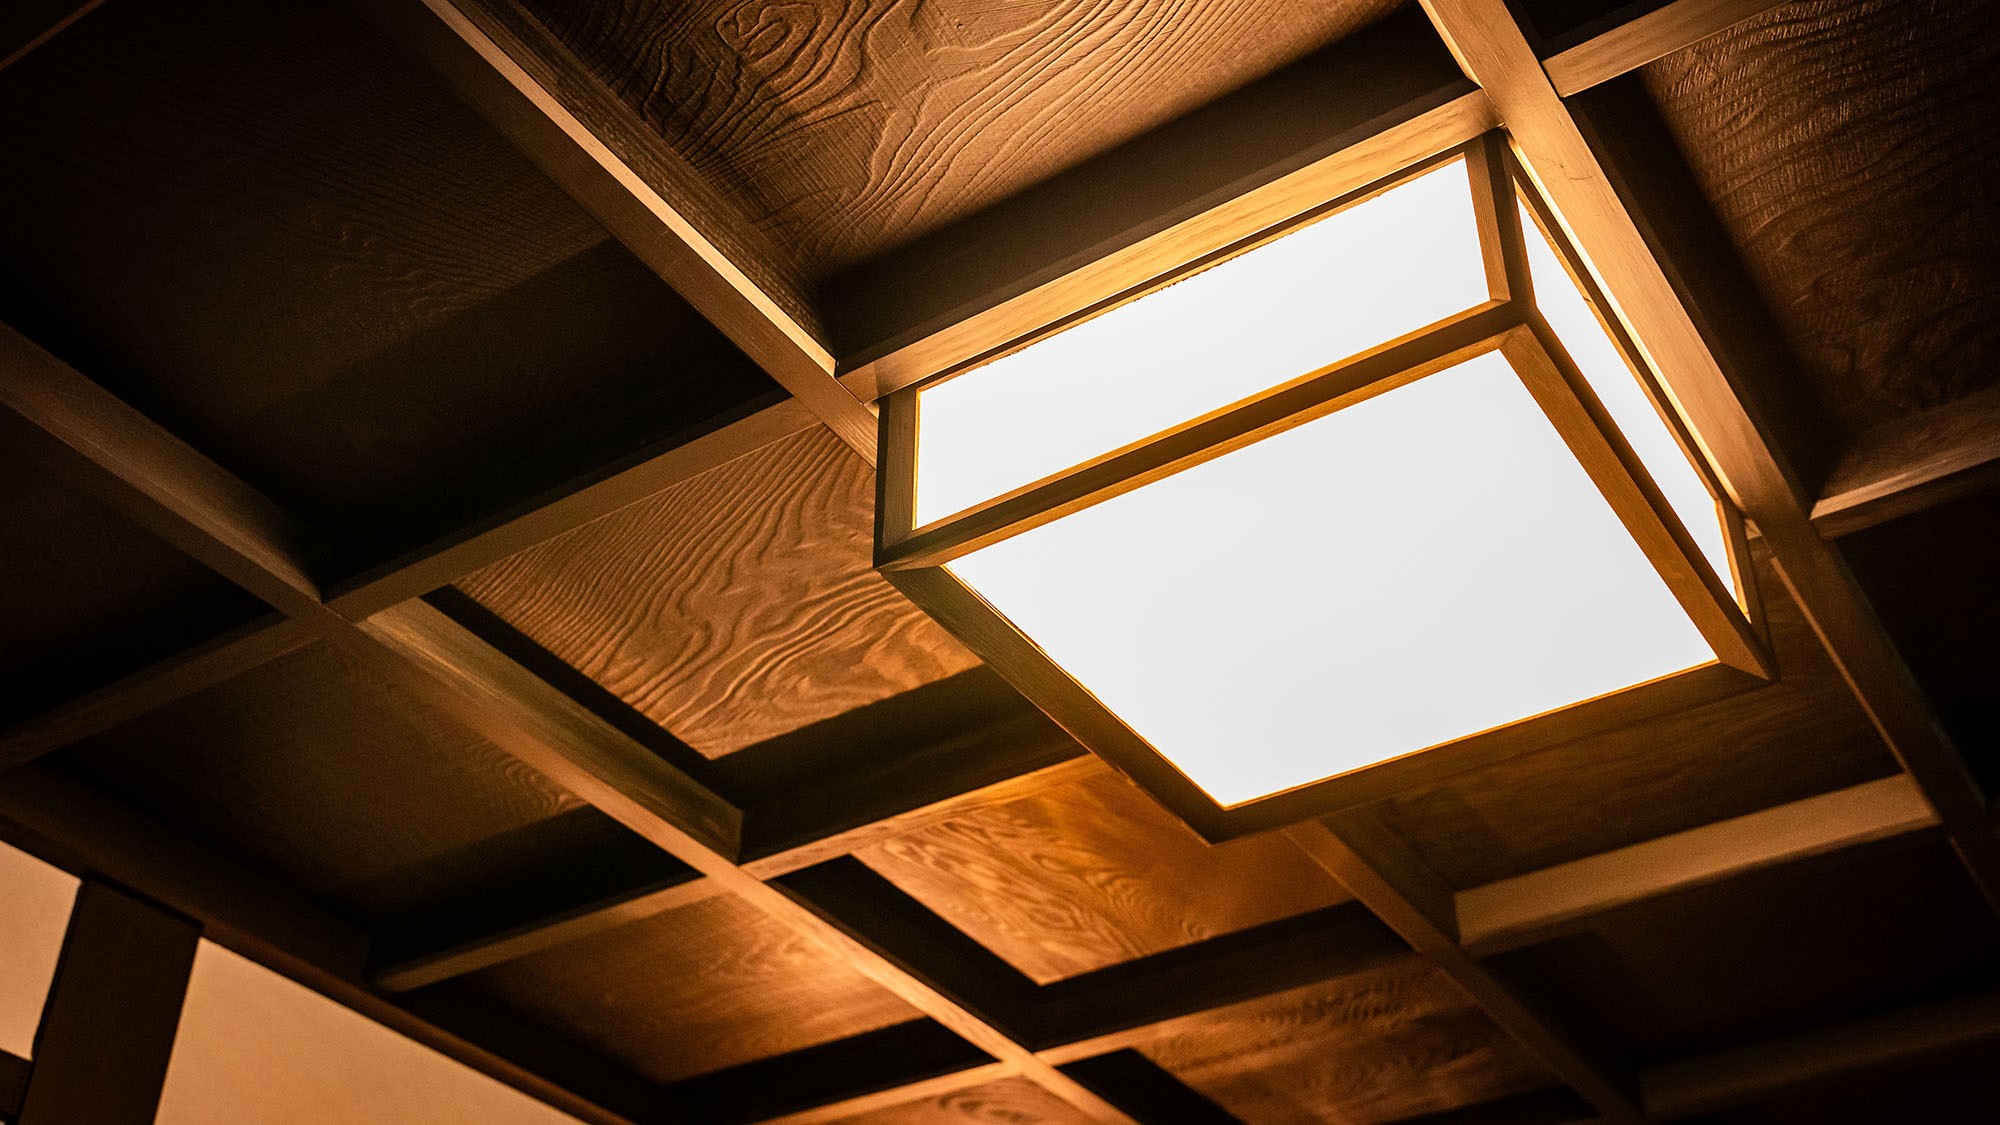 ・【インテリア】天井の板や明かりは日本家屋の伝統を感じさせます